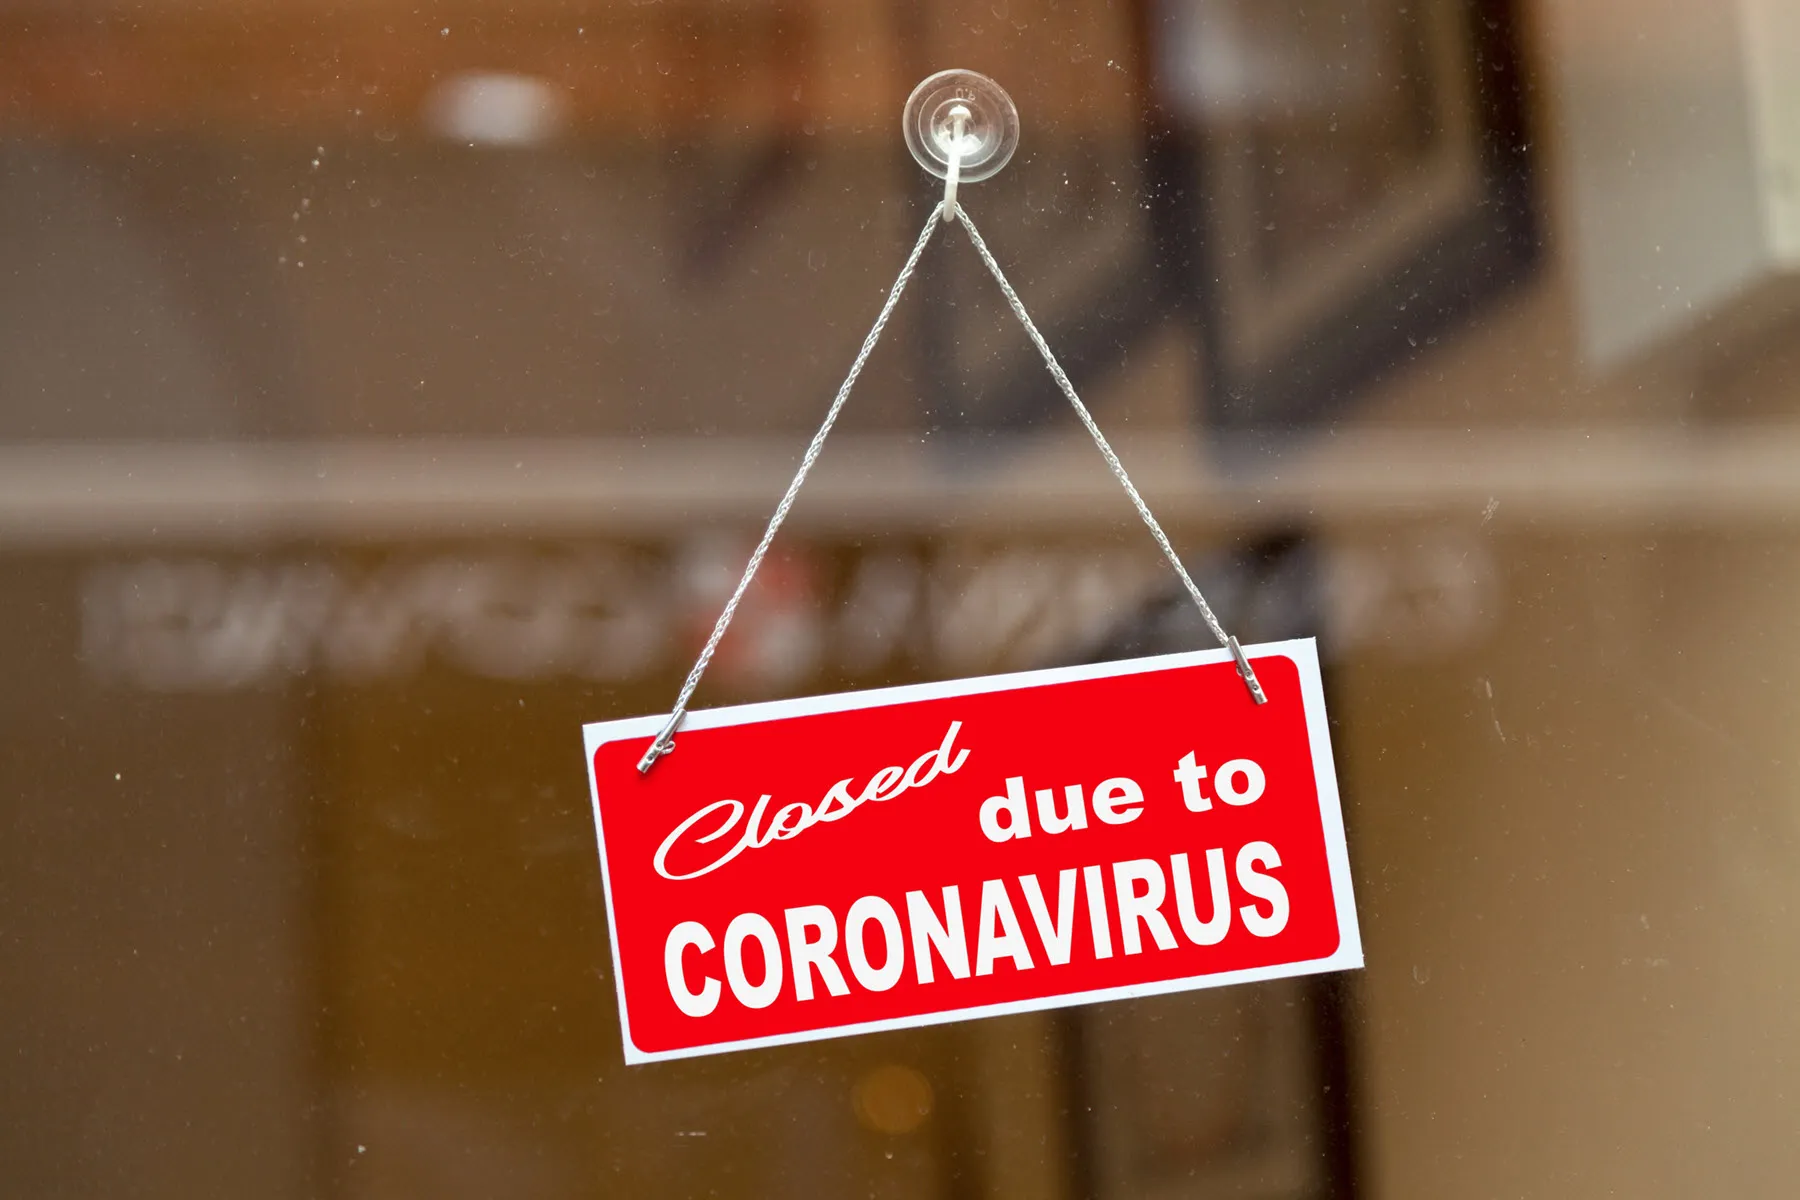 store-closed-coronavirus